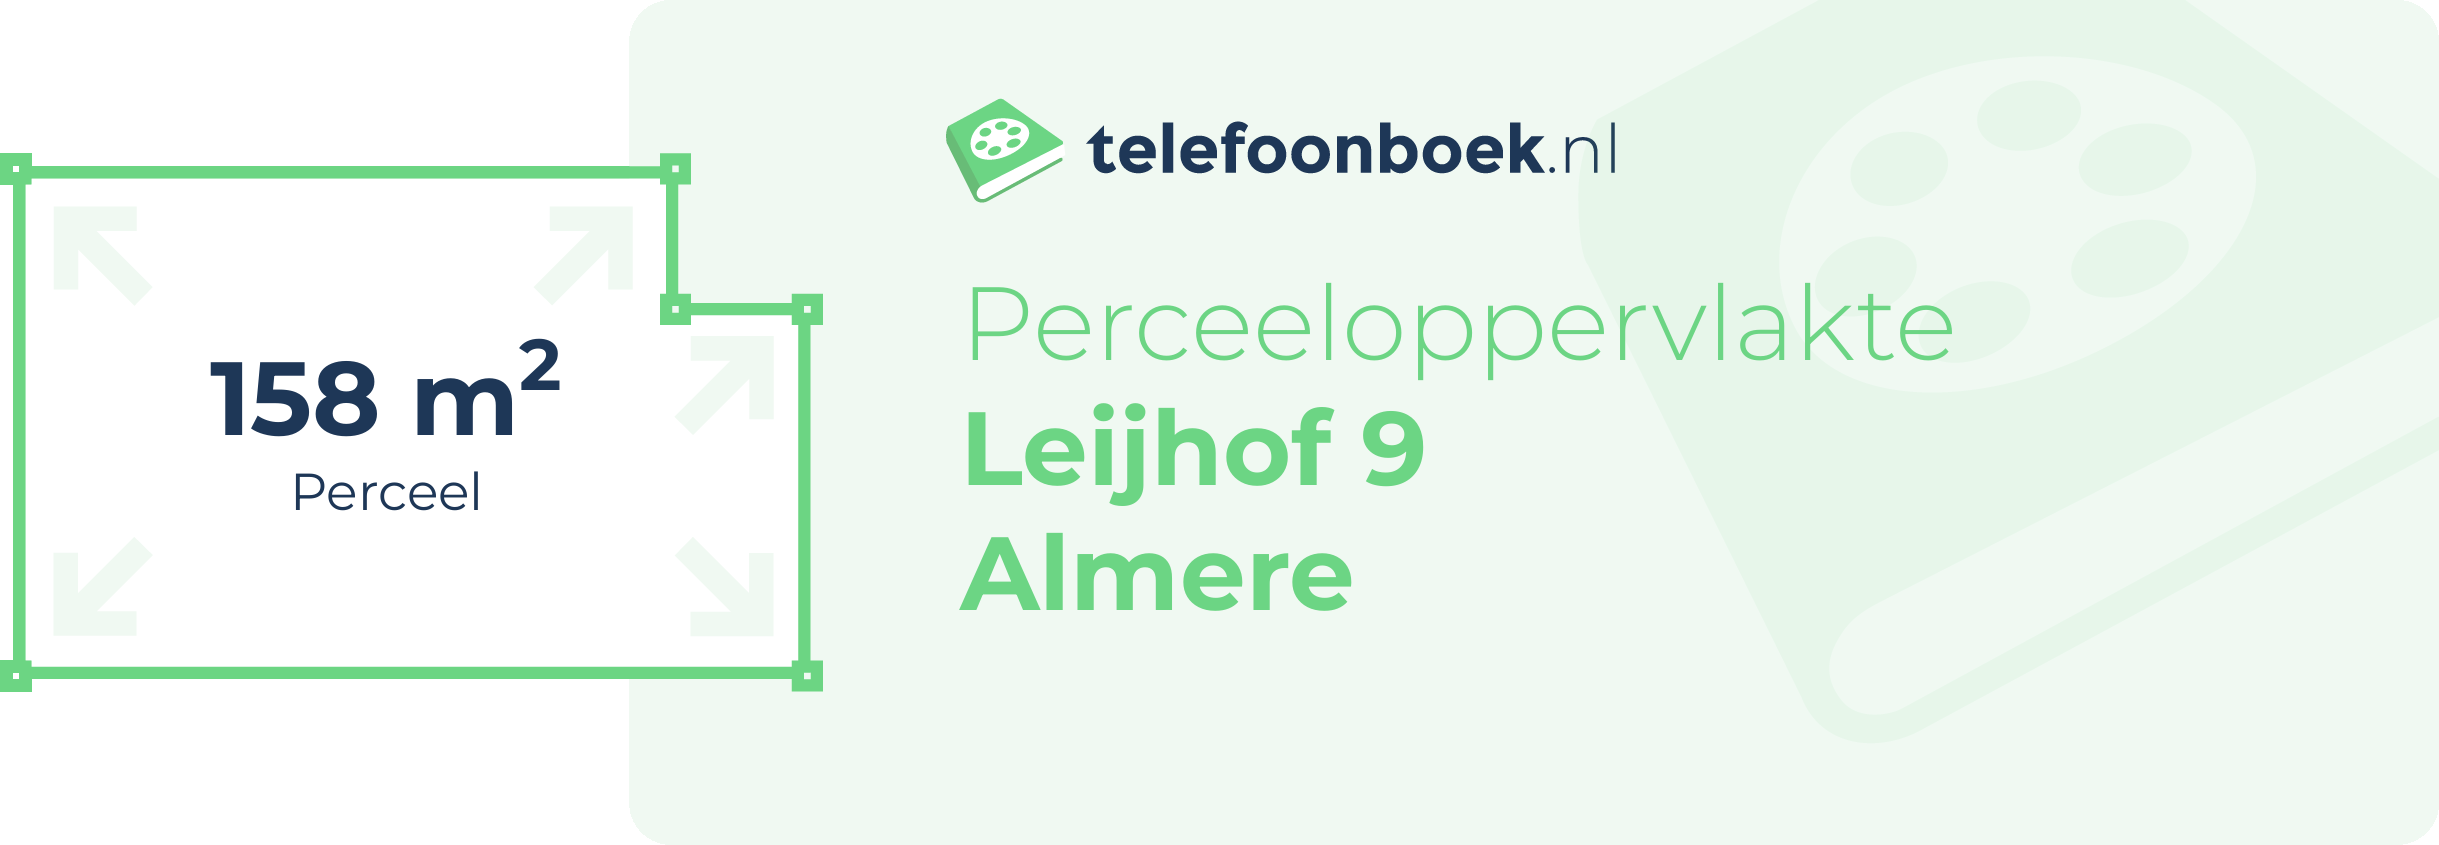 Perceeloppervlakte Leijhof 9 Almere